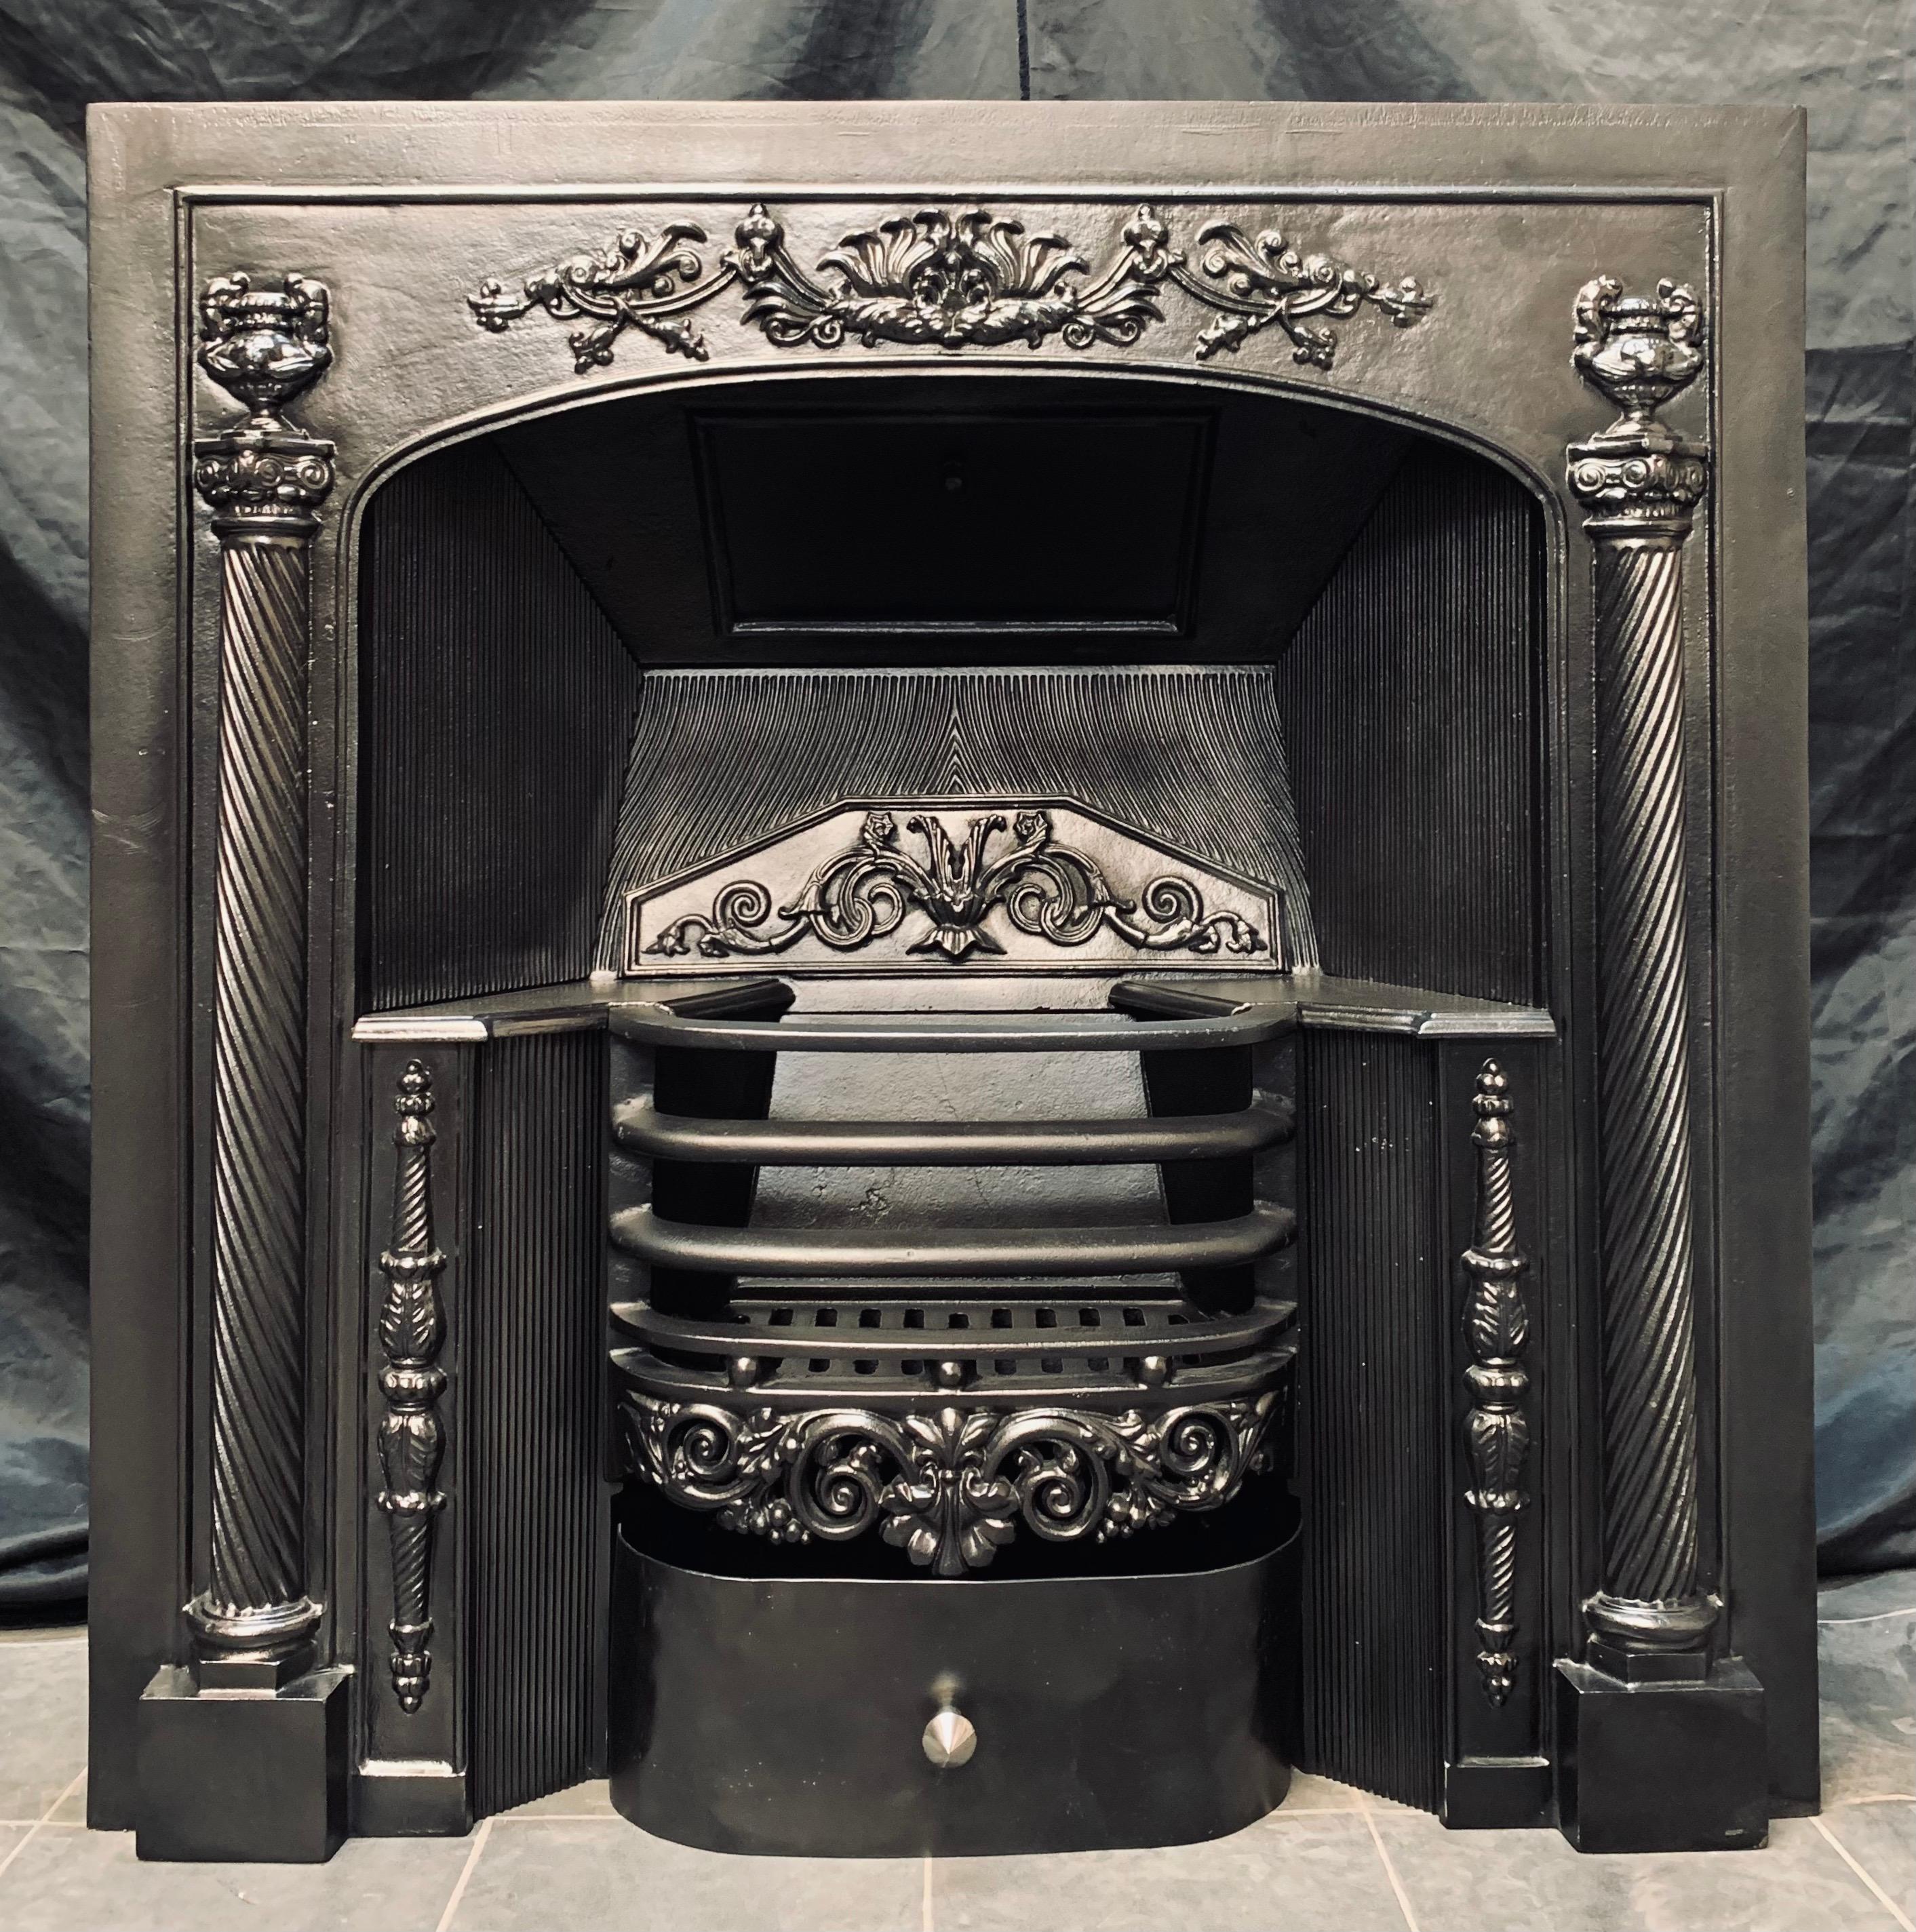 Un insert de cheminée de style géorgien du 19ème siècle, élégant et bien équilibré. Une grande plaque extérieure encadrée avec un ornement central en relief flanqué de deux grands fuseaux en torsion d'orge coiffés d'urnes, et des blocs de pied mis